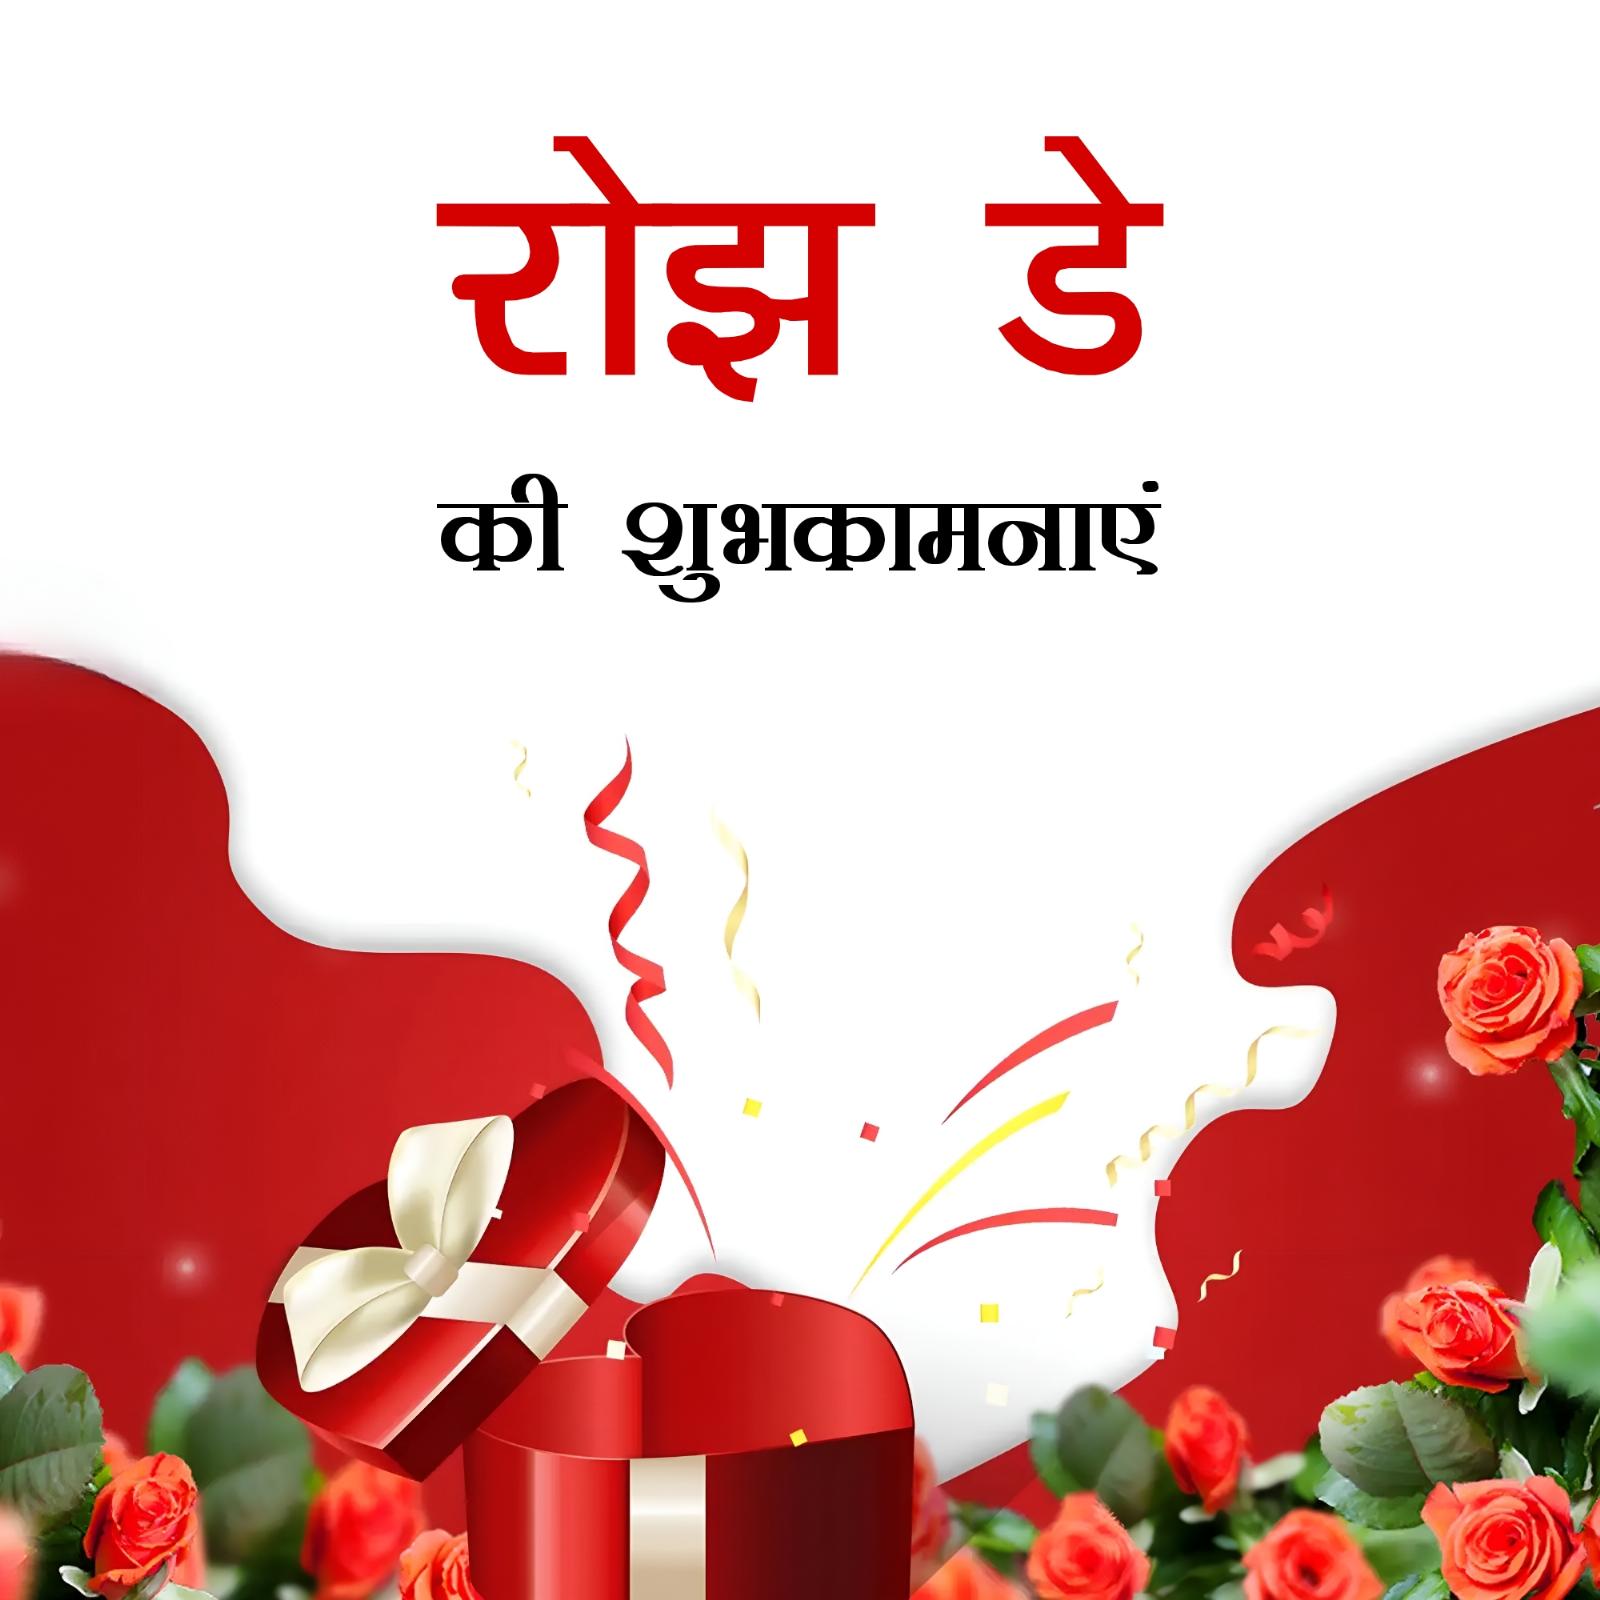 Rose Day Ki Shubhkamnaye Images